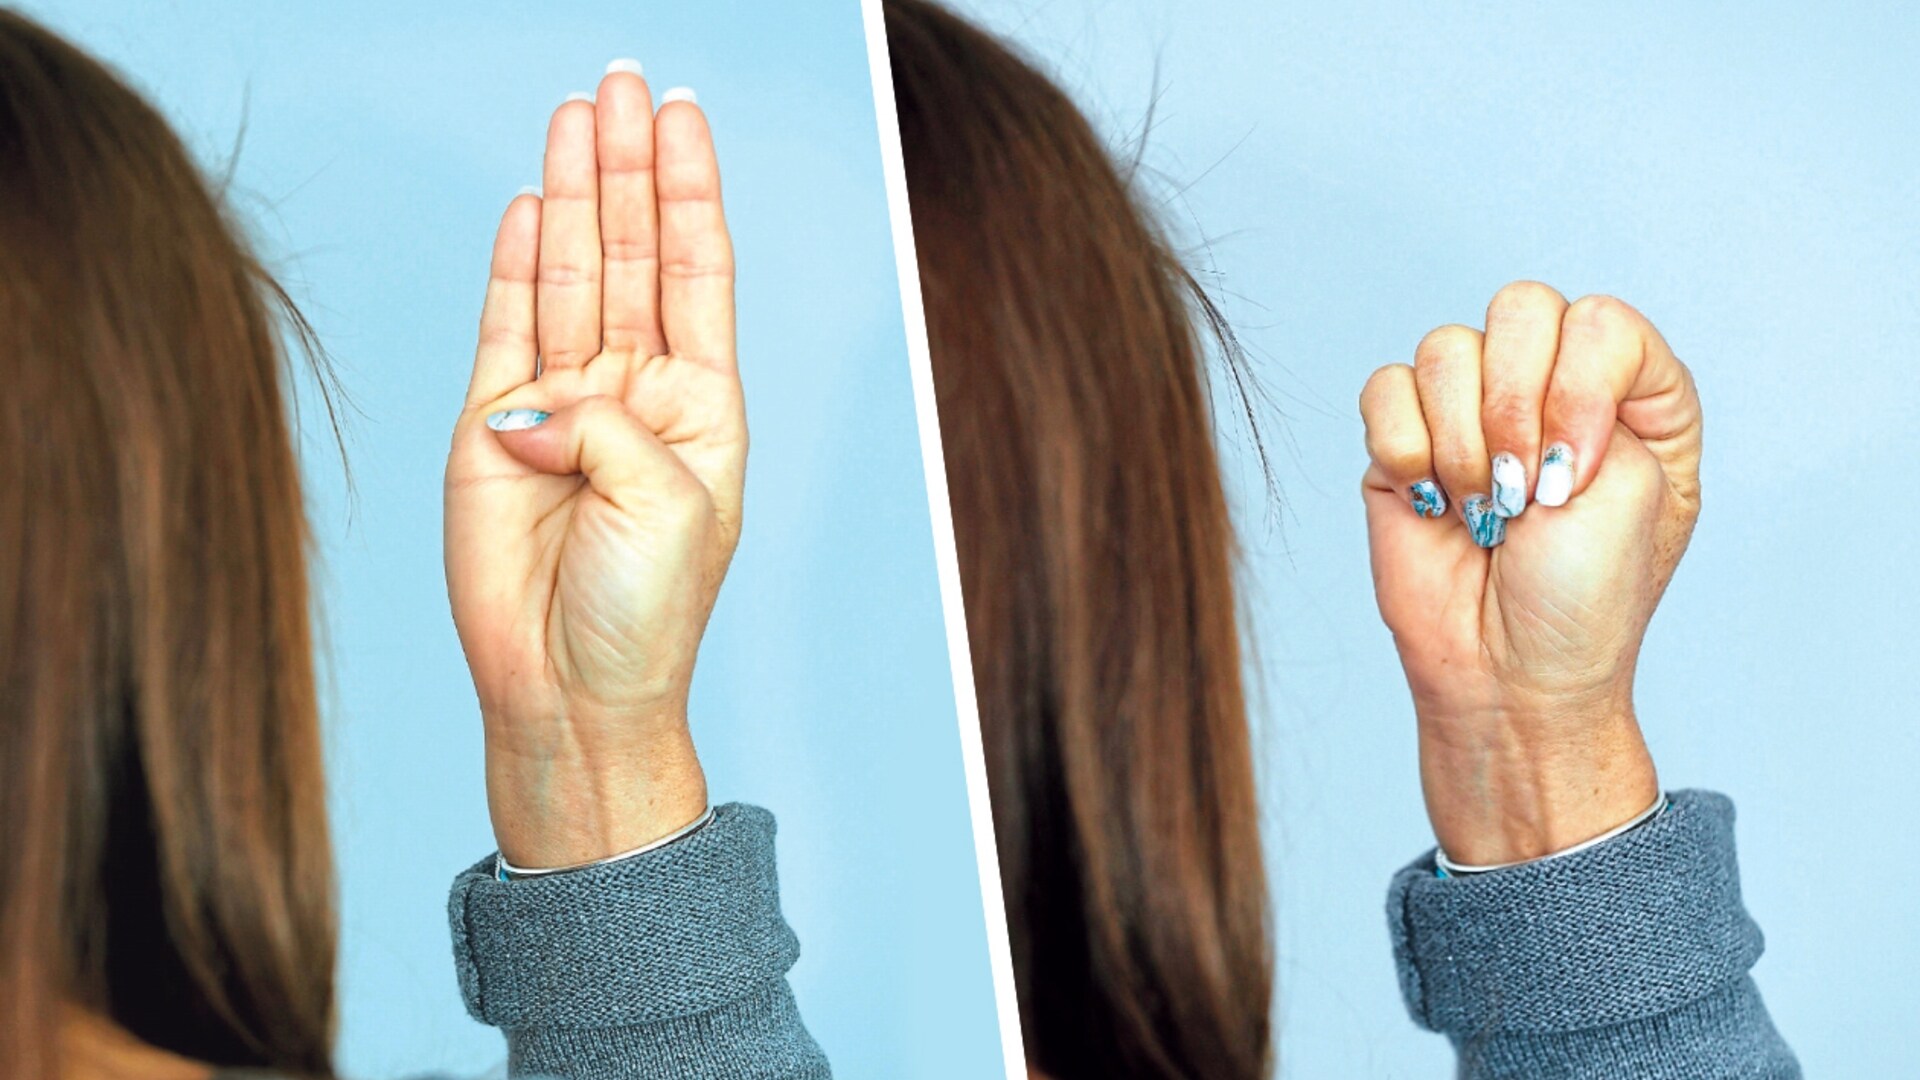 Stummer Hilfeschrei - Dieses einfache Handzeichen kann Leben retten